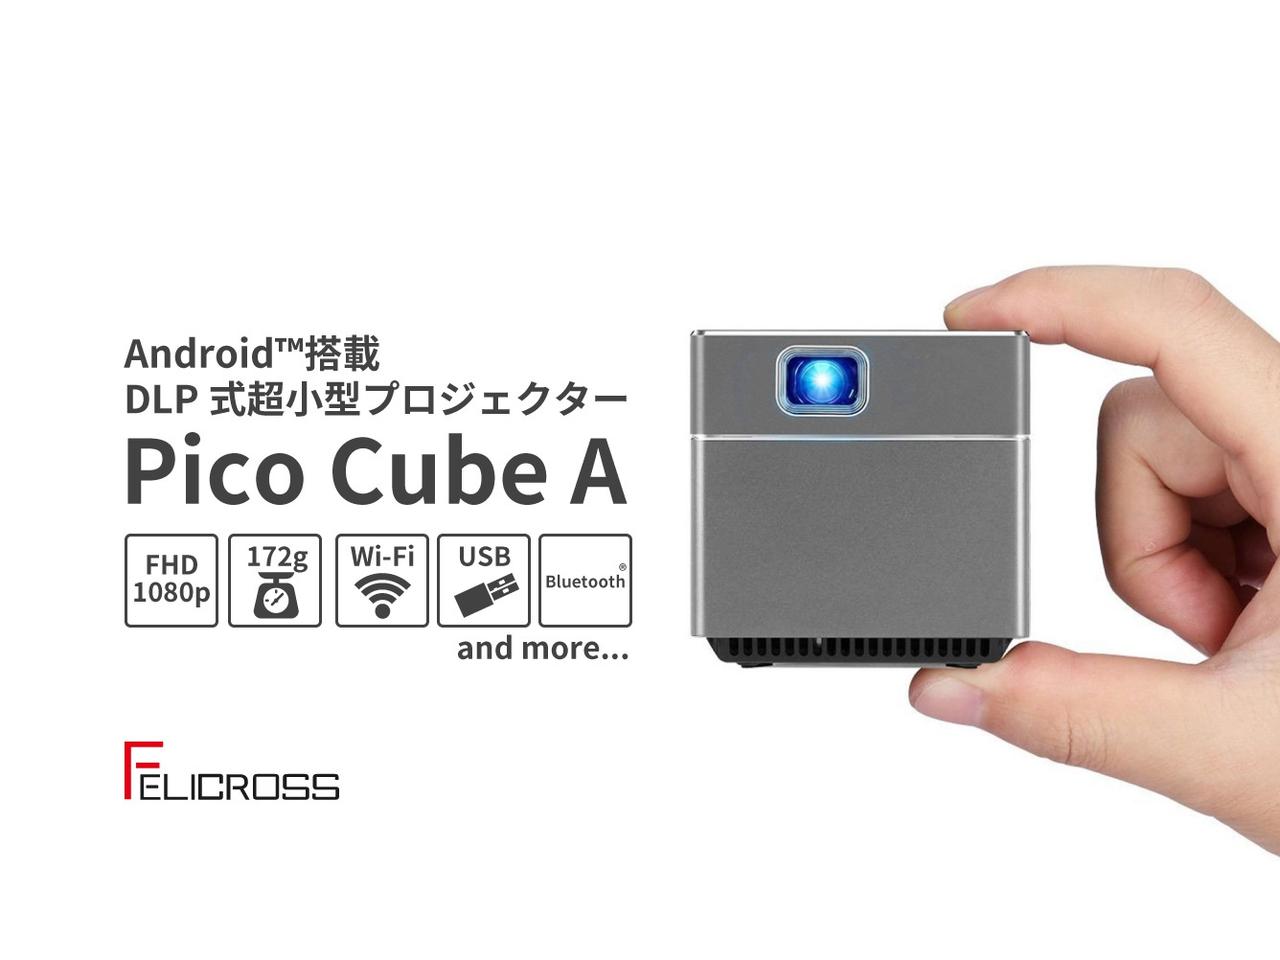 iPhone XSよりも軽い！5.5cmキューブ型の超小型プロジェクター｢Pico Cube A｣がキャンペーン開始